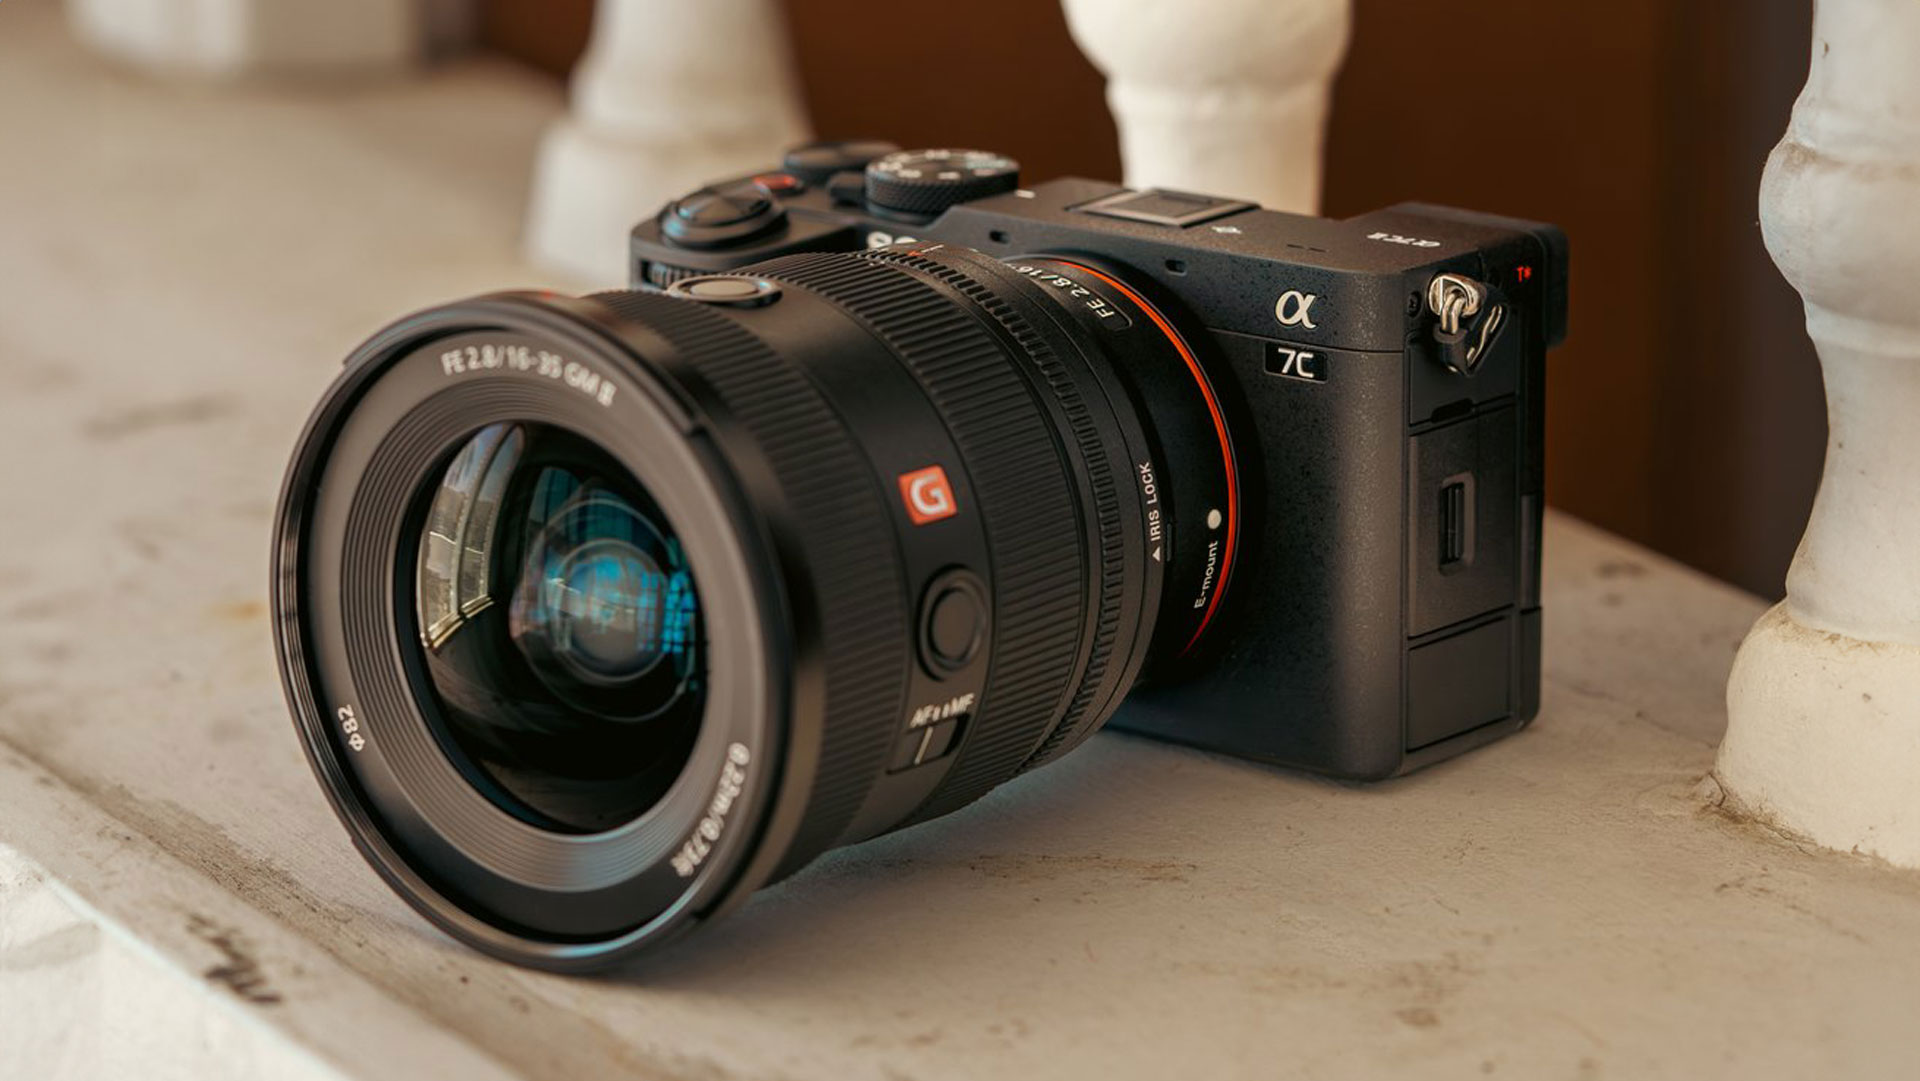 Anuncian la Sony a7C II - Nueva cámara compacta full-frame con